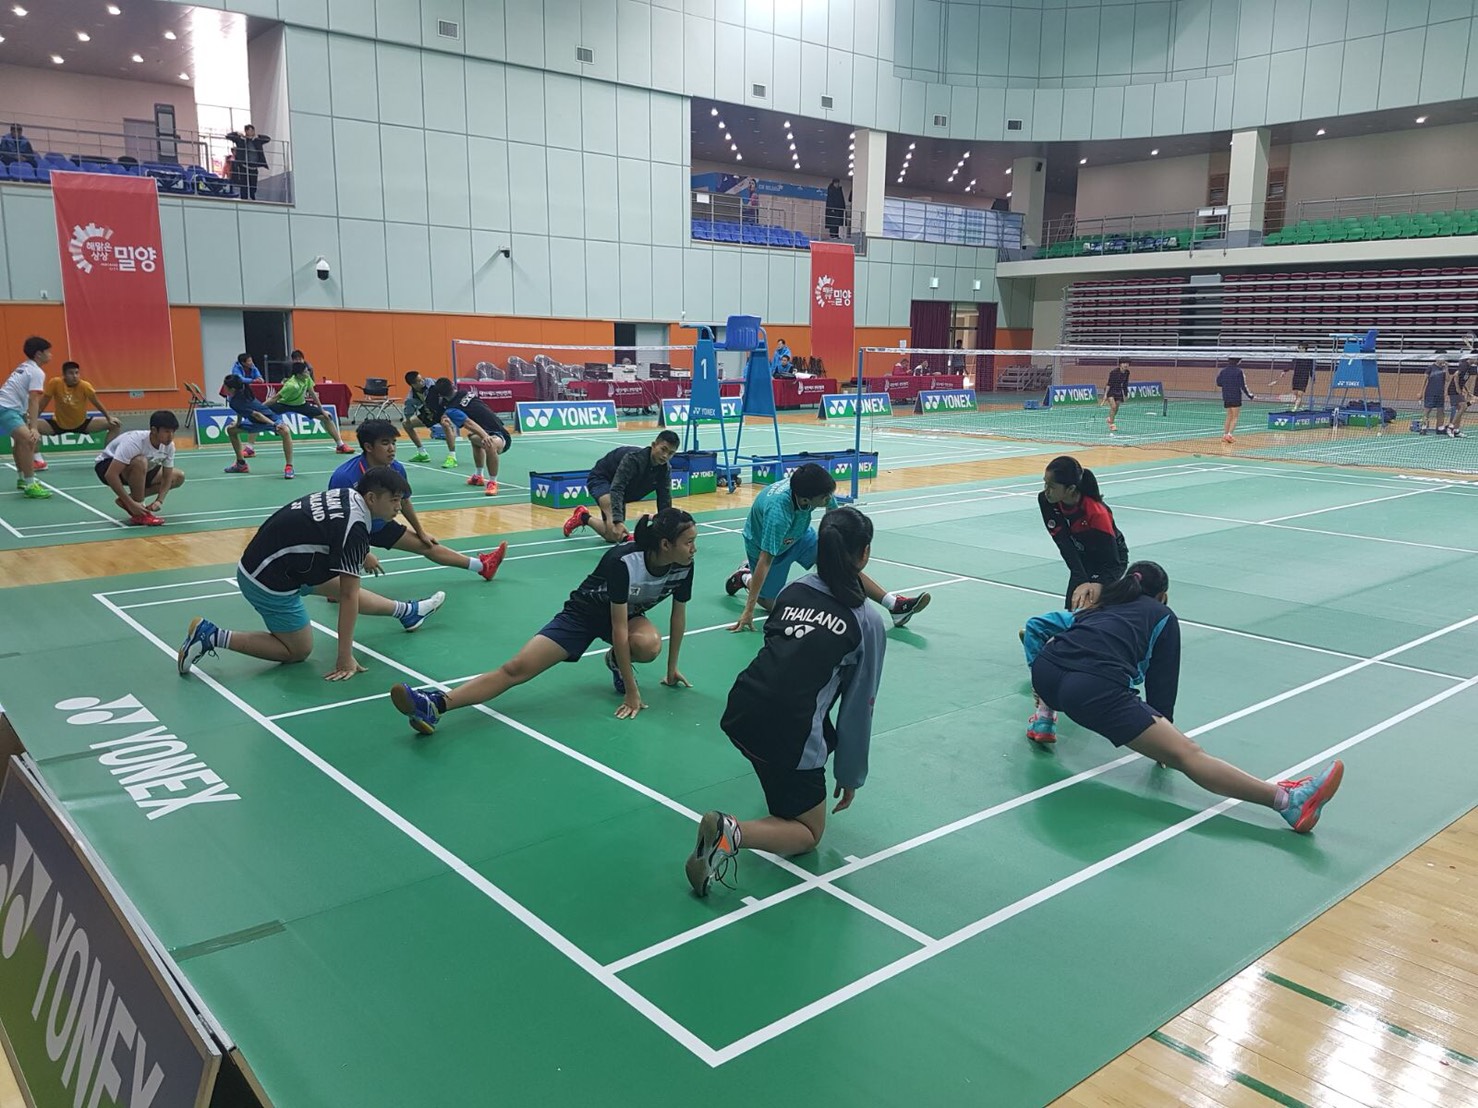 การแข่งขันแบดมินตัน YONEX Korea Junior Badminton Championships วันที่ 16 พ.ย. 2560